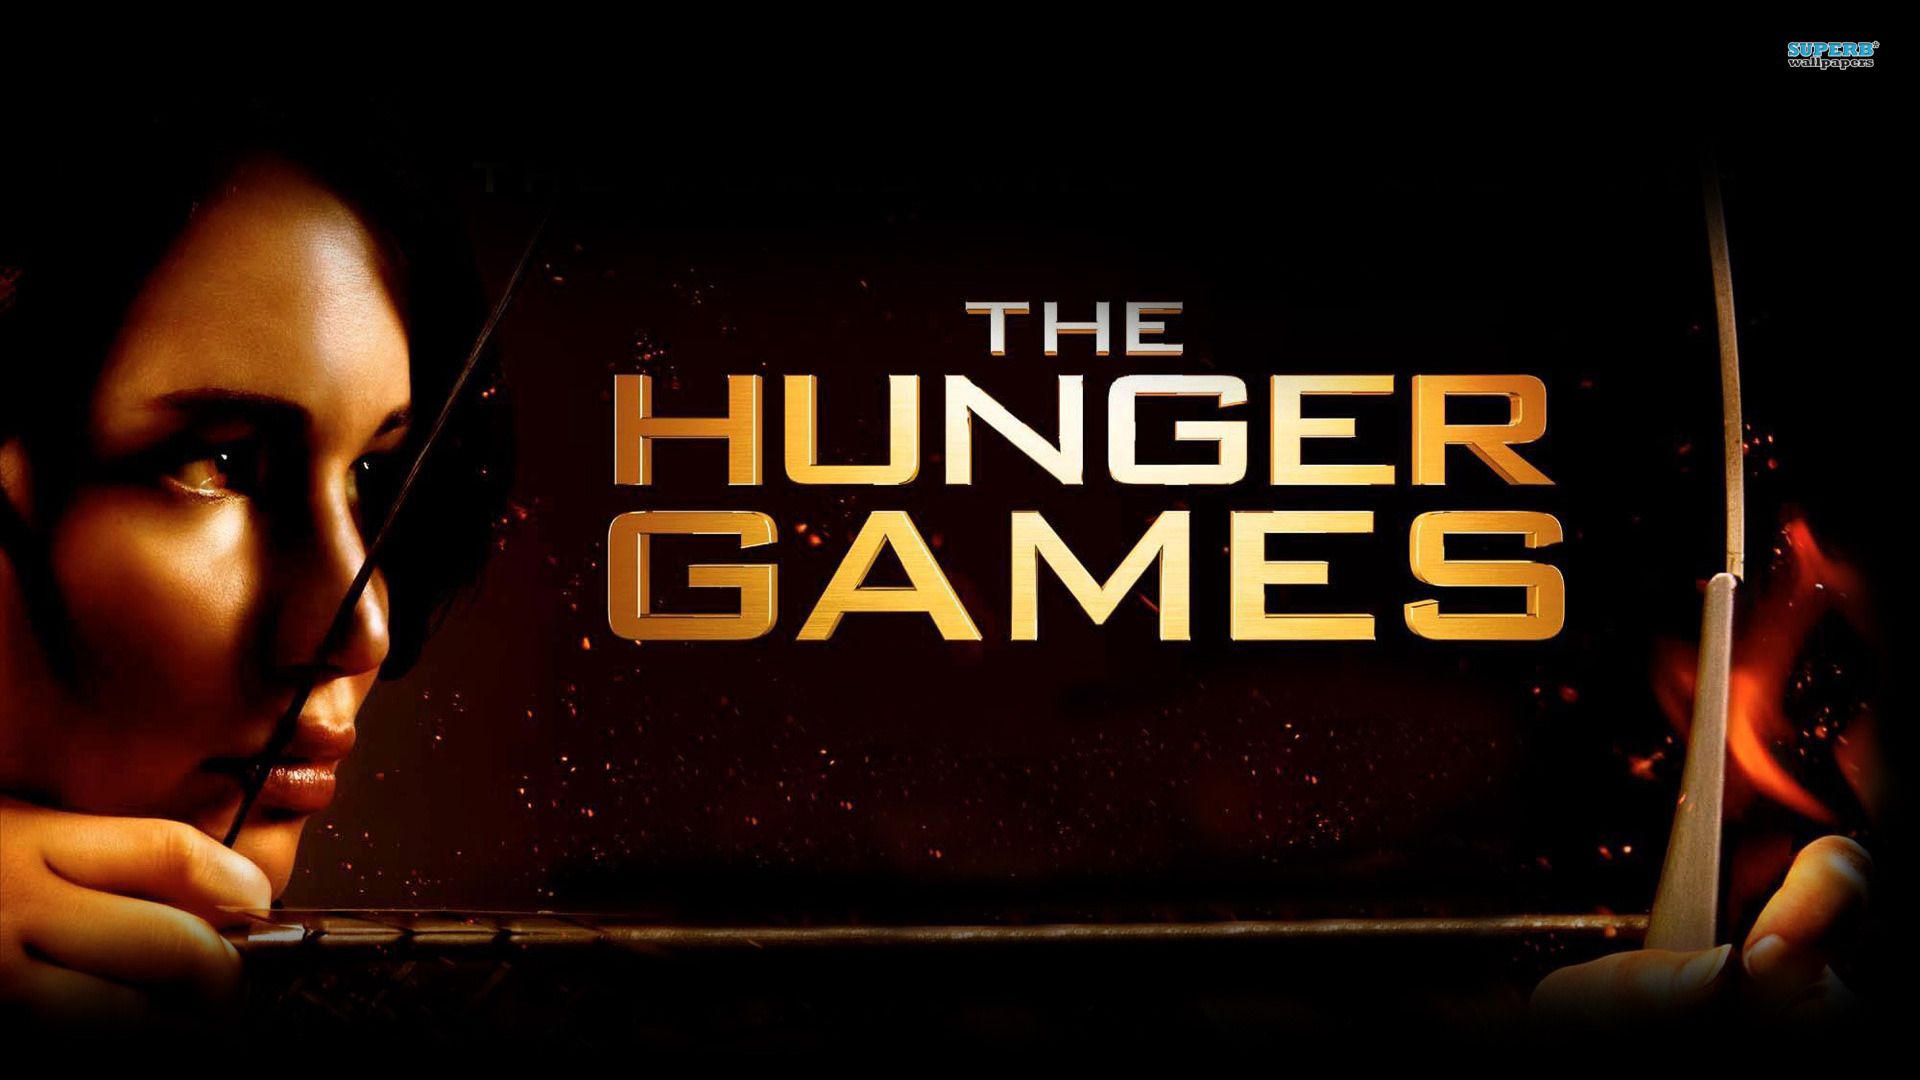 Katniss Everdeen - The Hunger Games wallpaper - Movie wallpapers ...